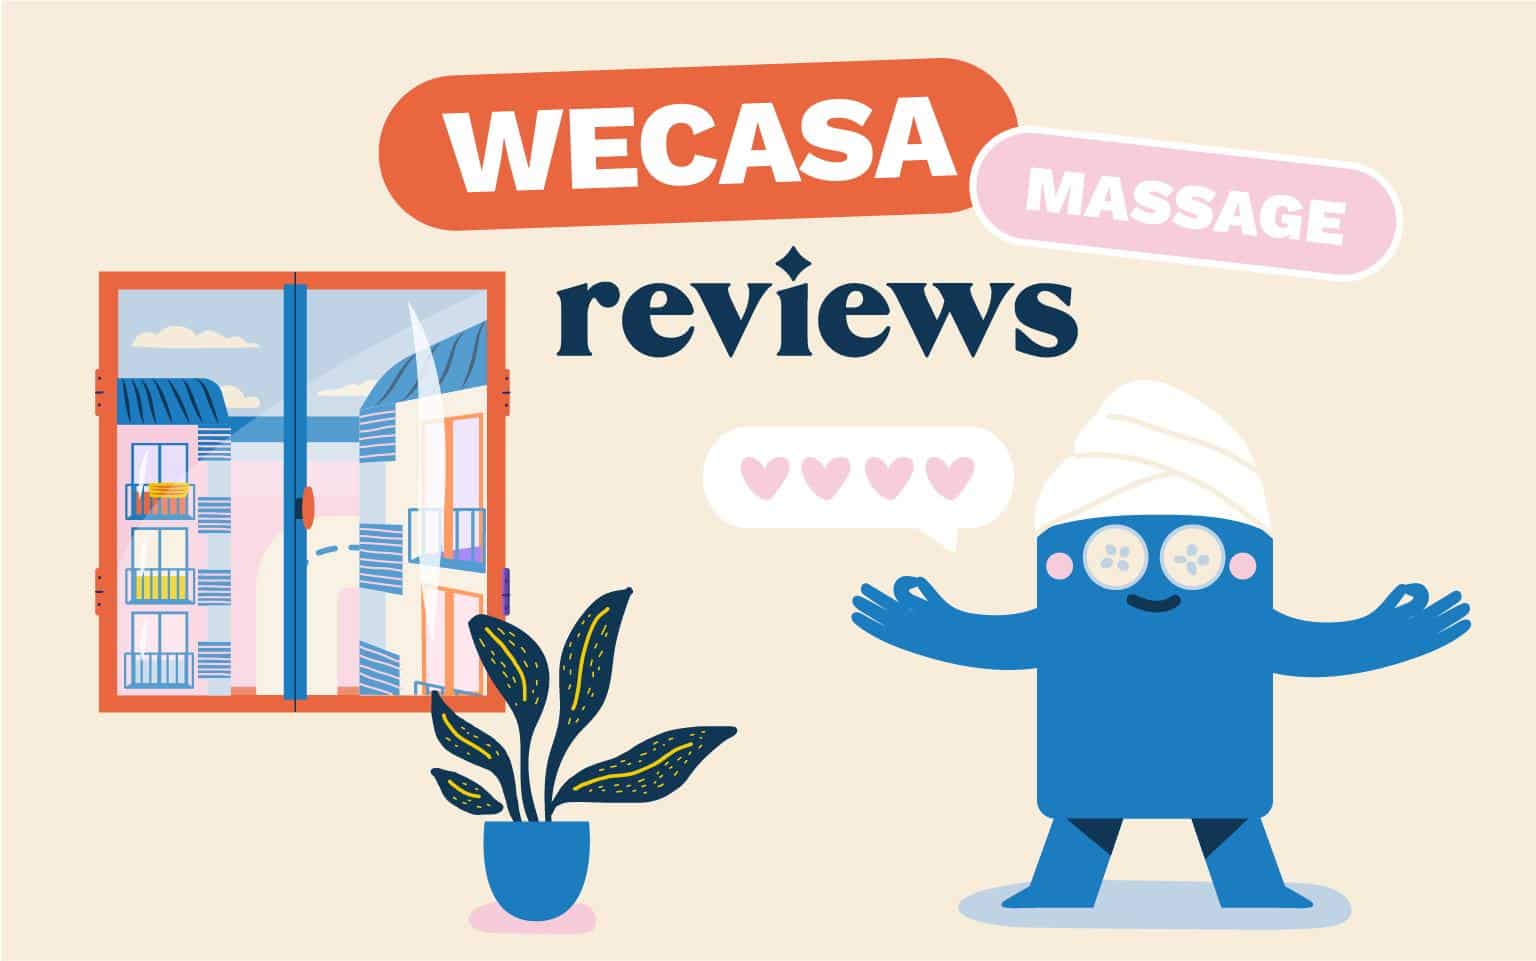 Discover the Wecasa Massage reviews